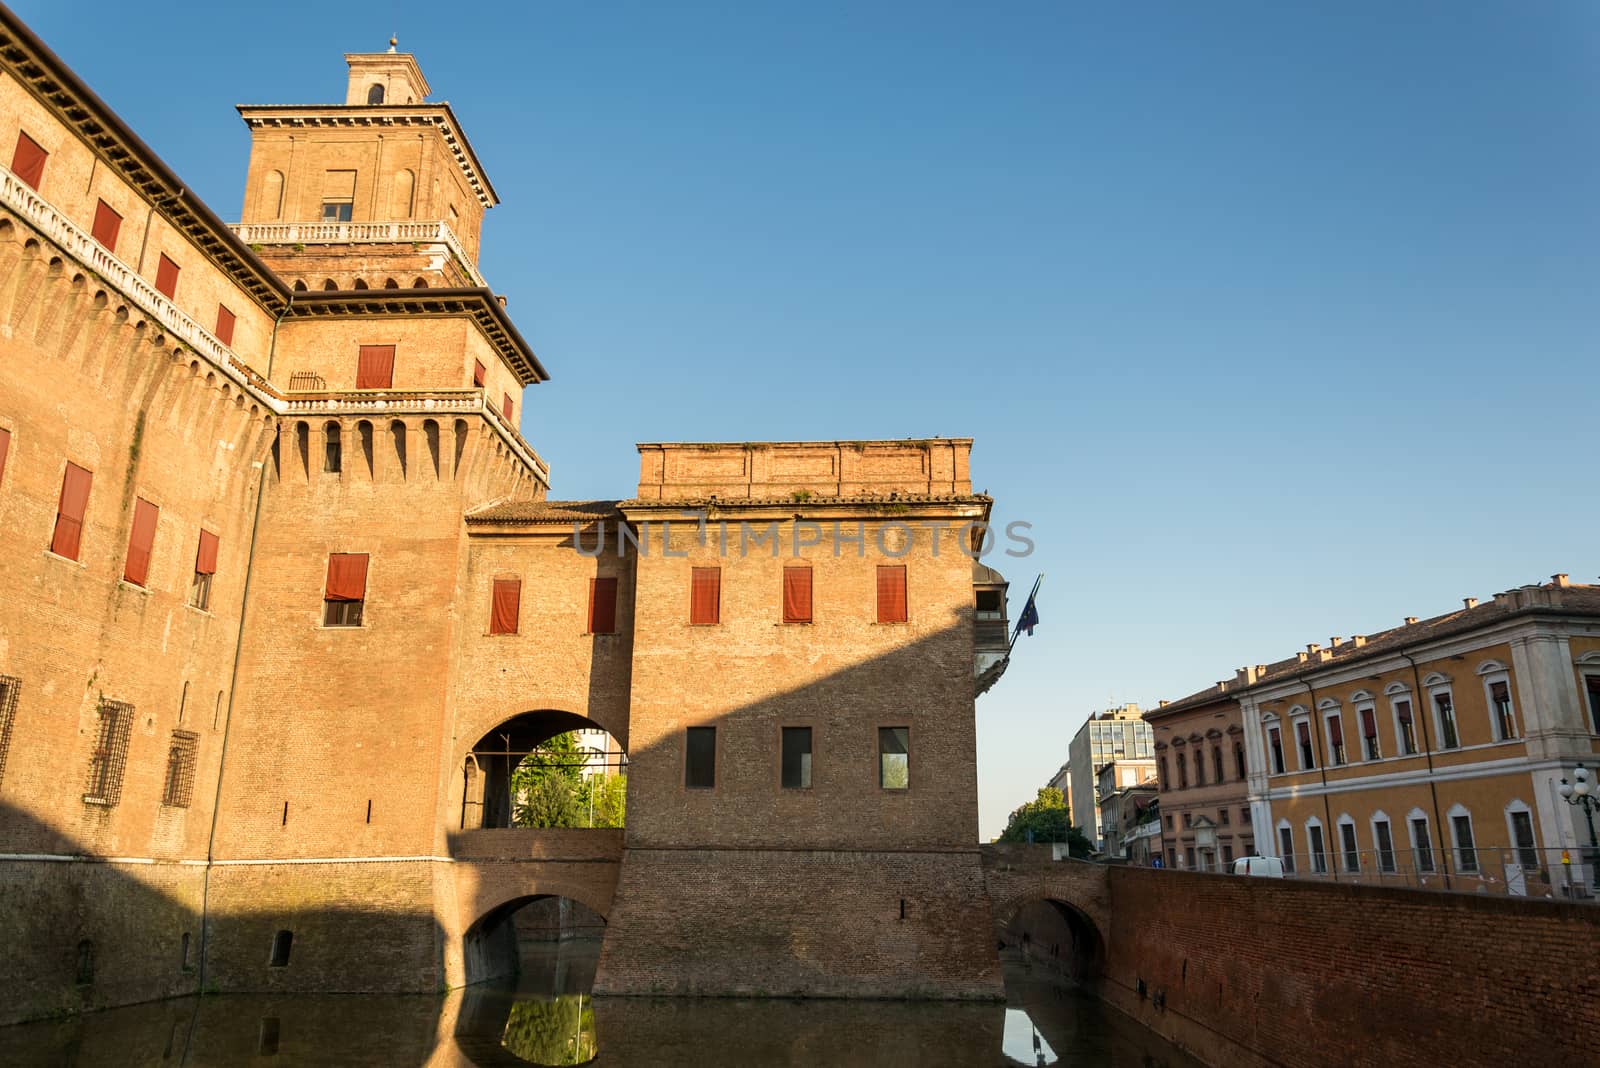 View of the Estensi's Castle in Ferrara by enrico.lapponi